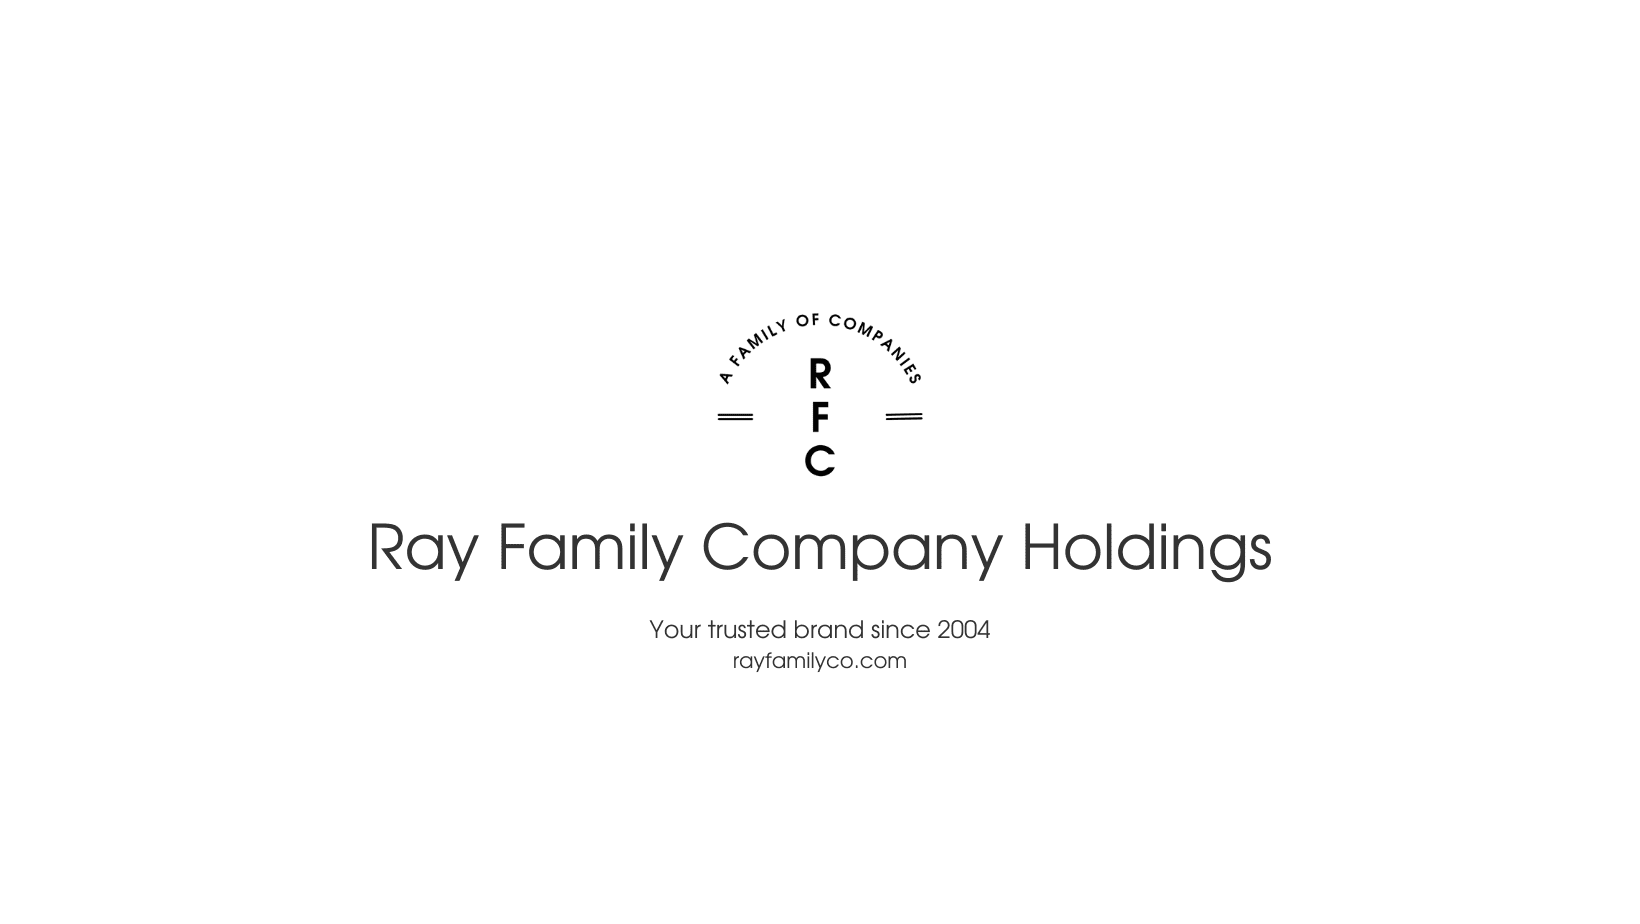 Ray Family Company Holdings, LLC